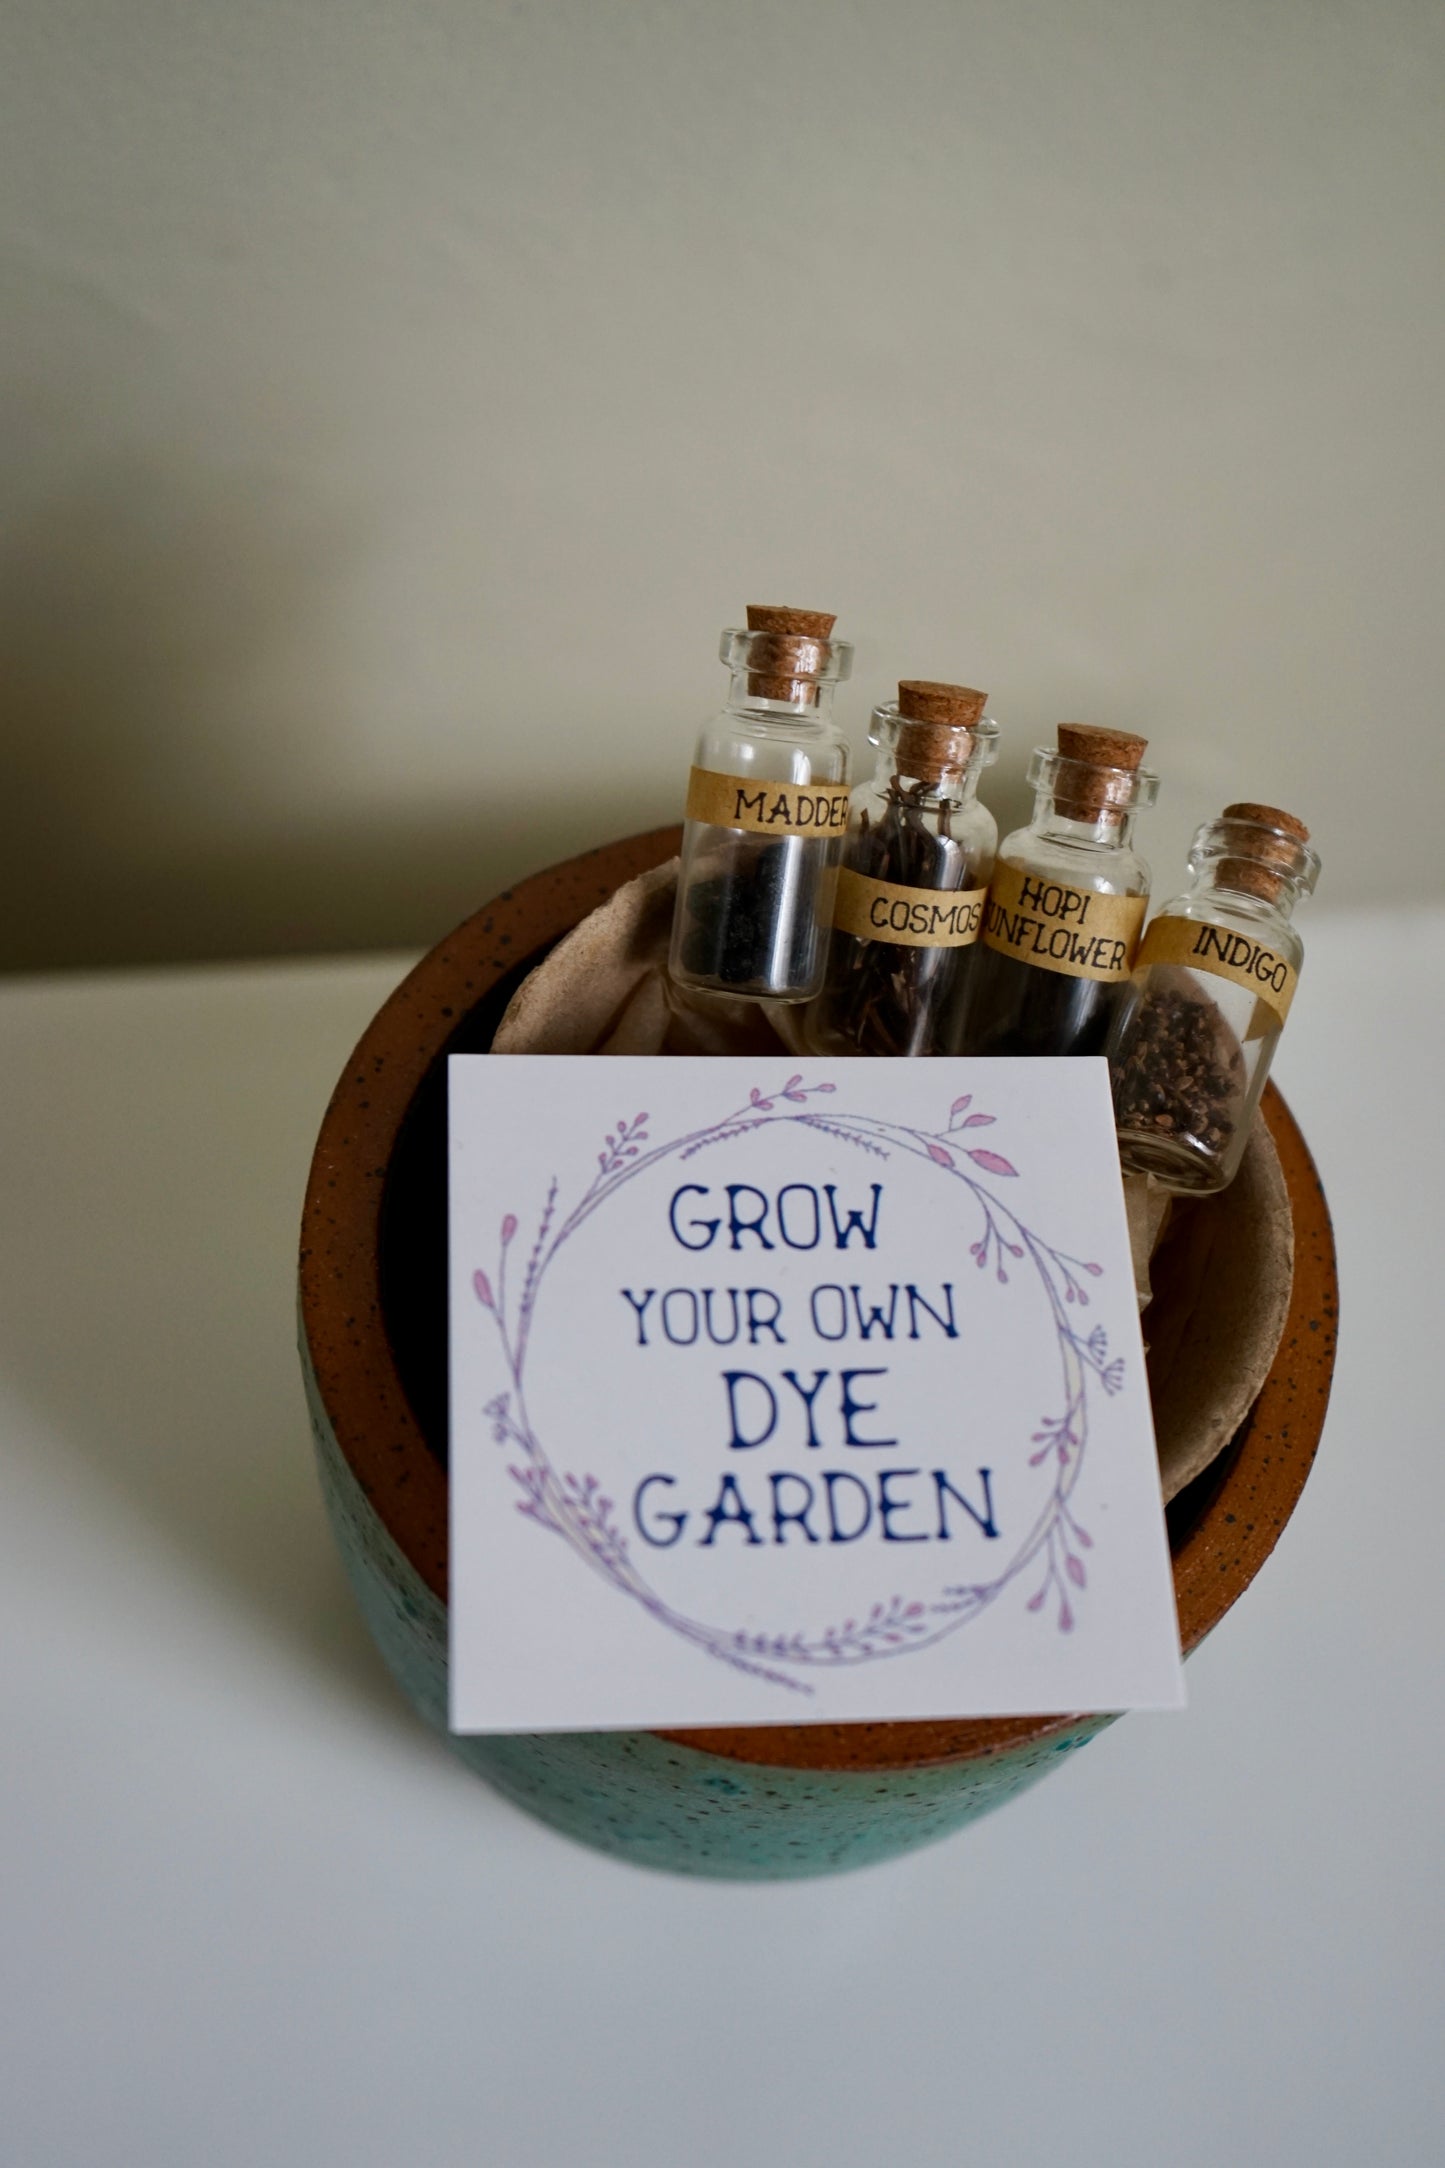 Dye Garden Kit